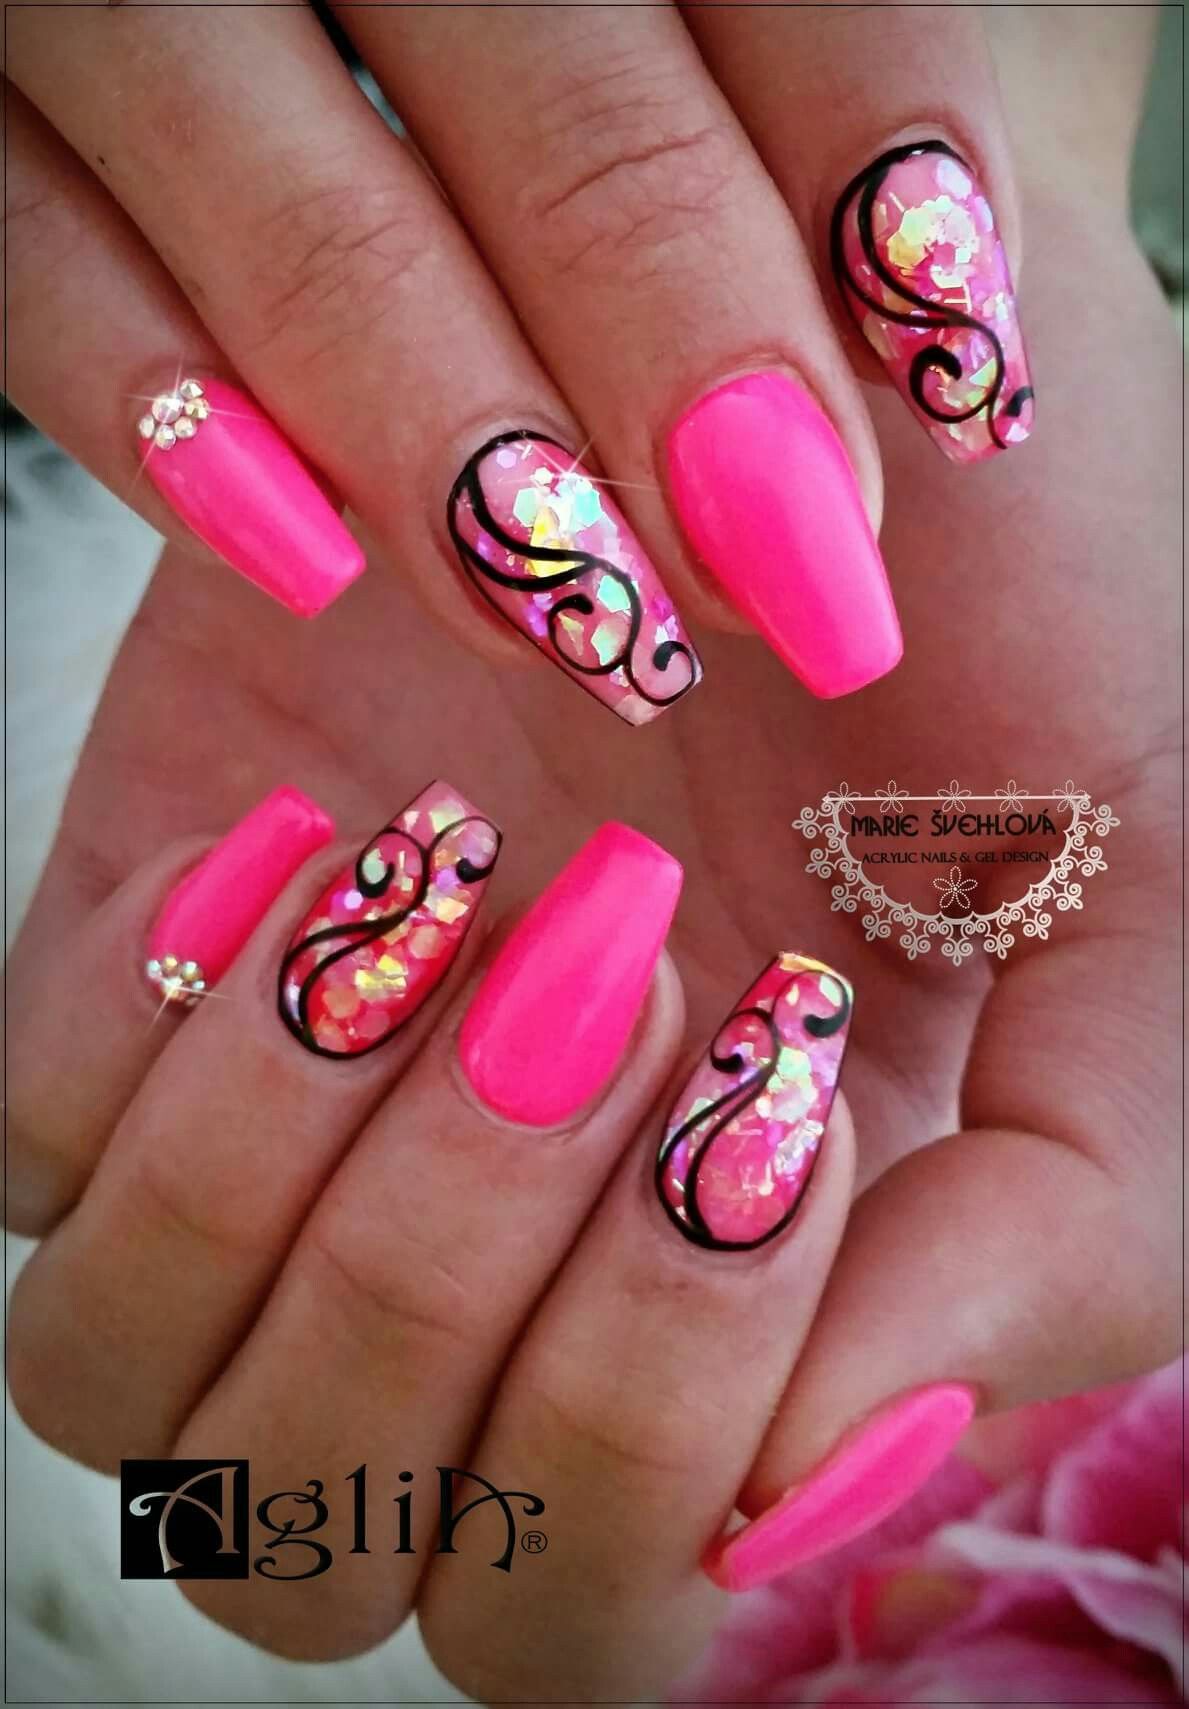 We Pink Tutti Frutti Gel Neon Pink Pigment Smichany S Clear Acrylic Powder Glitry Modelaz Clear Acrylic Powder Lesk Work Nails Pink Nails Nails